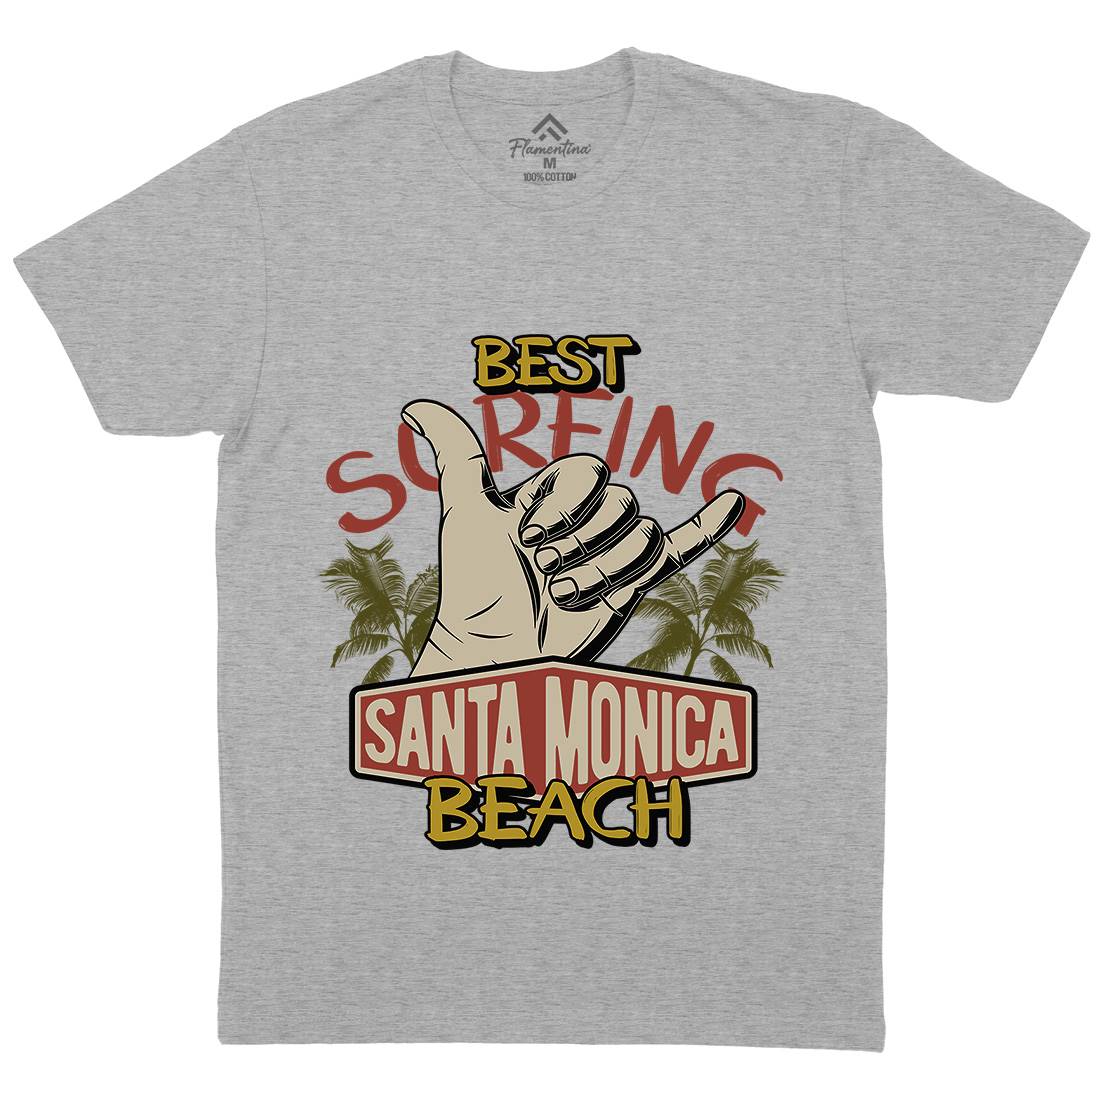 Best Surfing Beach Mens Organic Crew Neck T-Shirt Surf D909